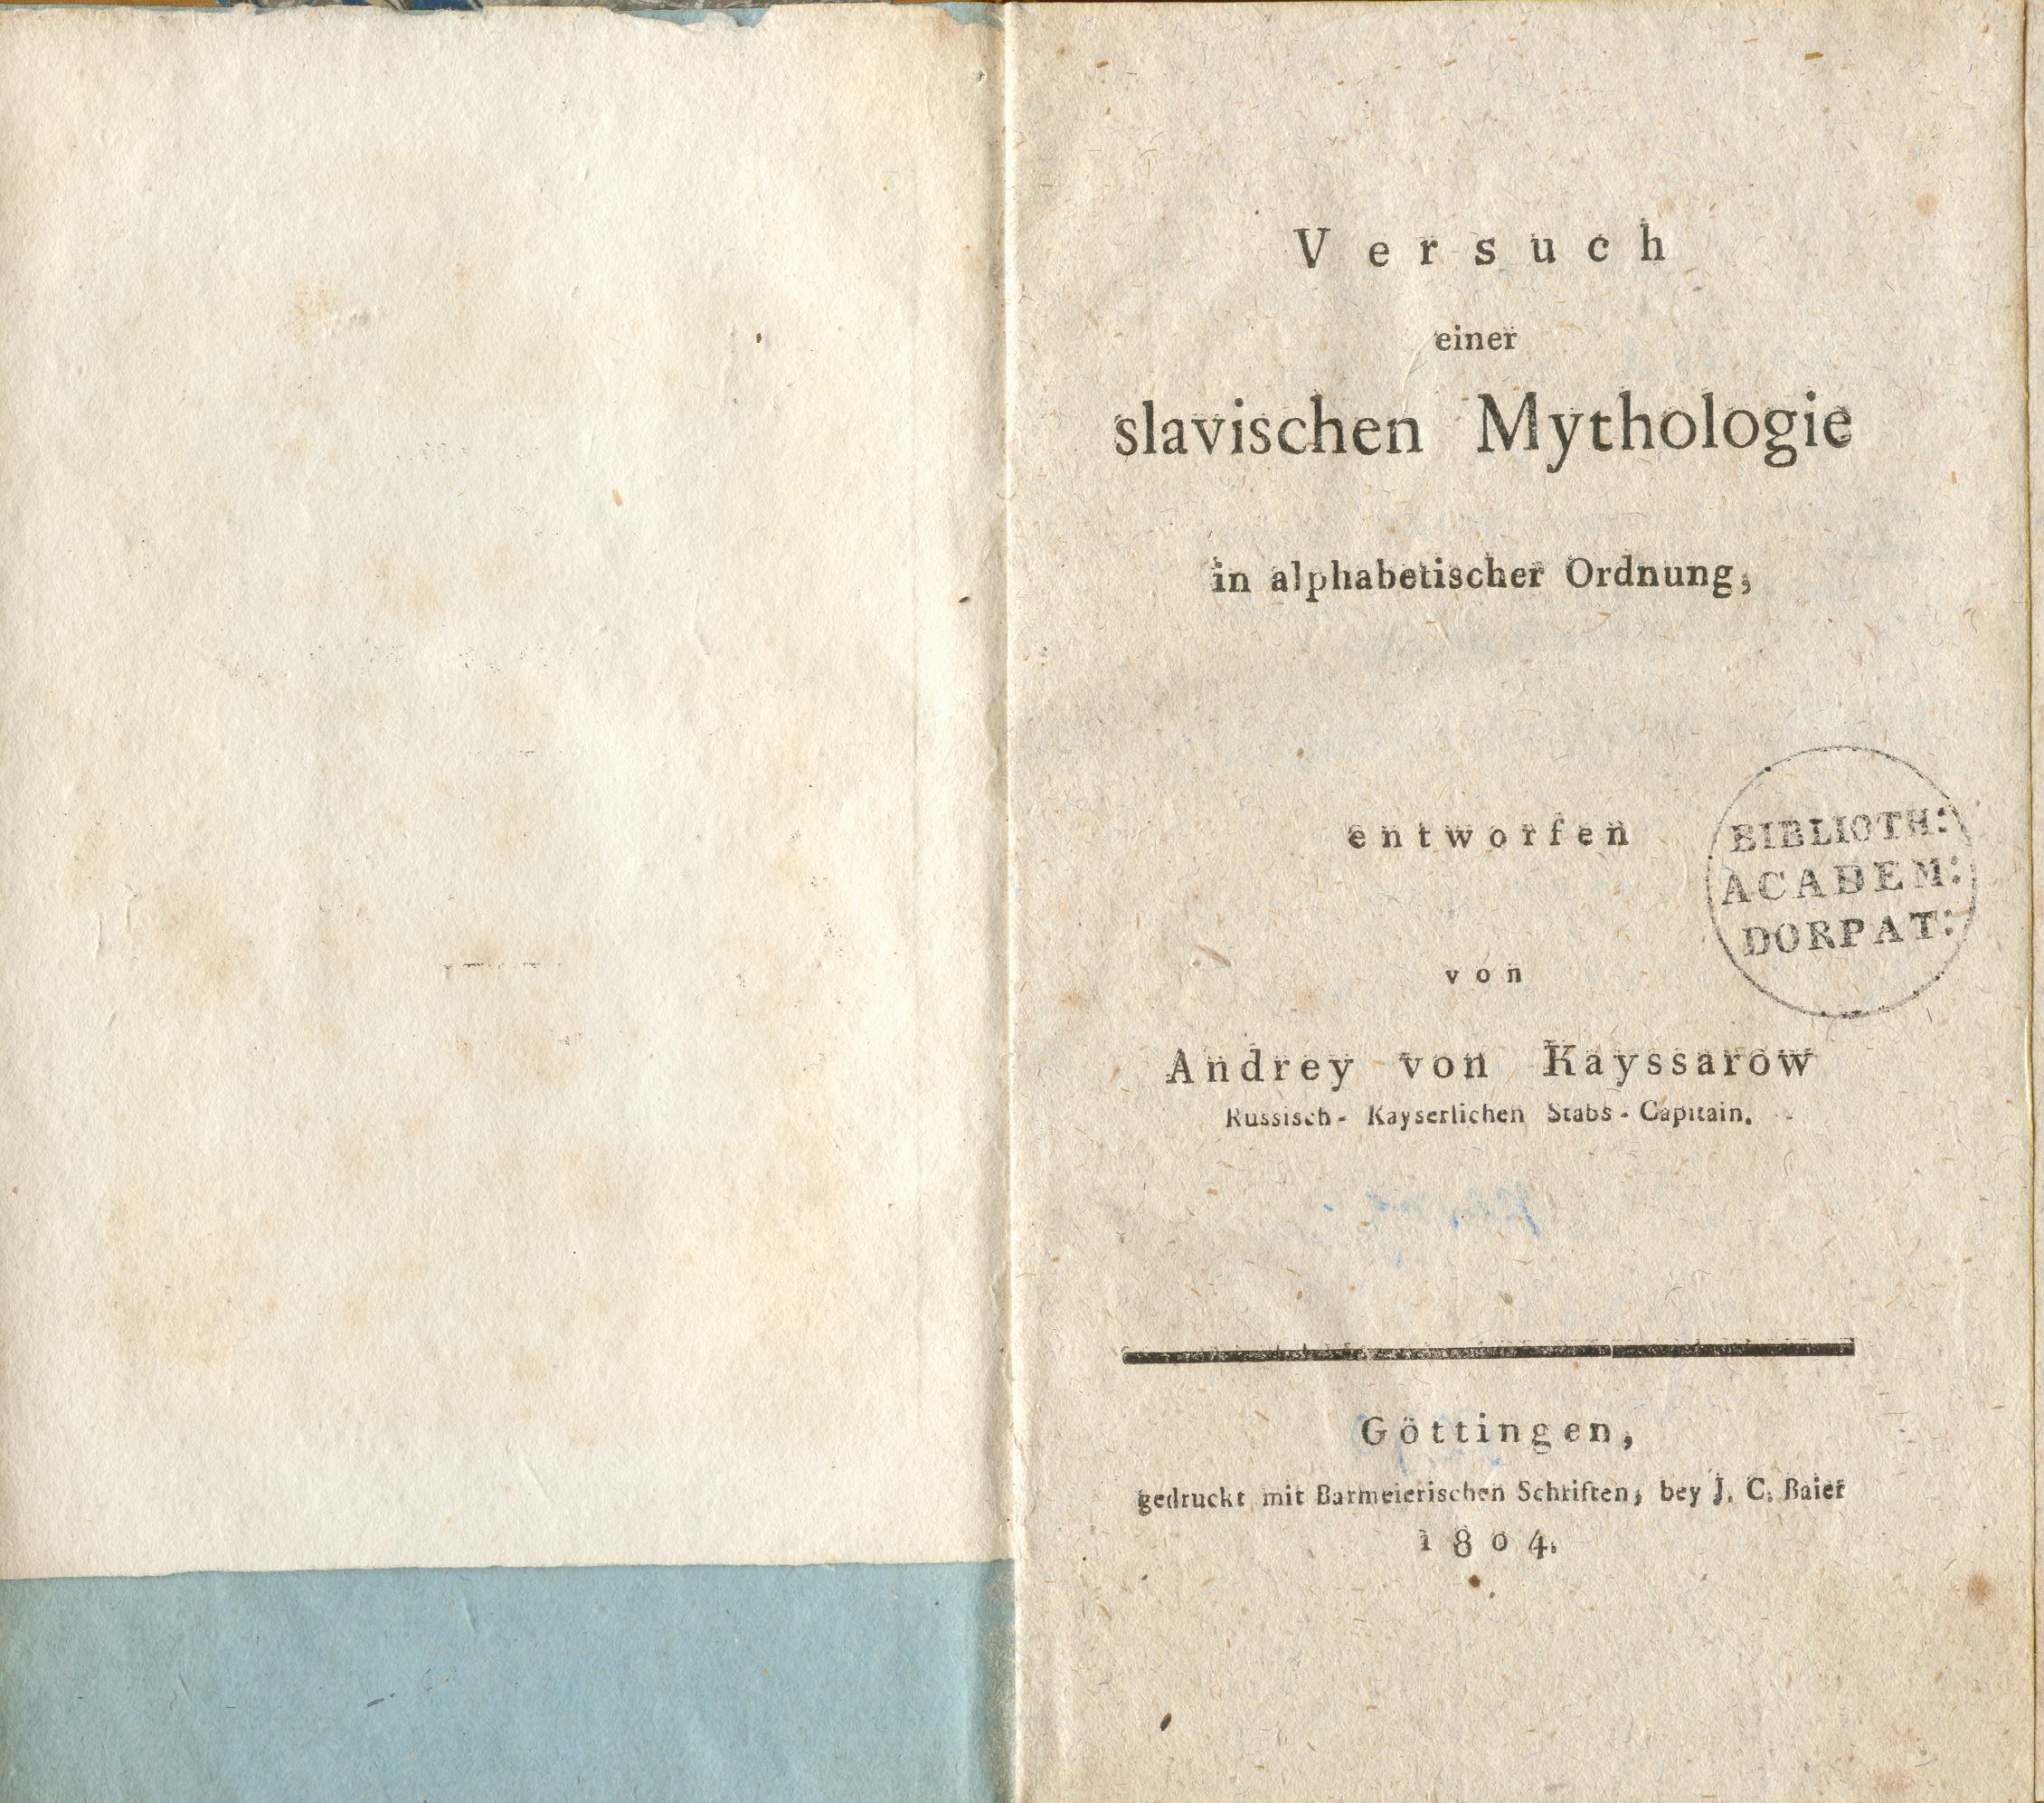 Versuch einer slavischen Mythologie (1804) | 3. Титульный лист